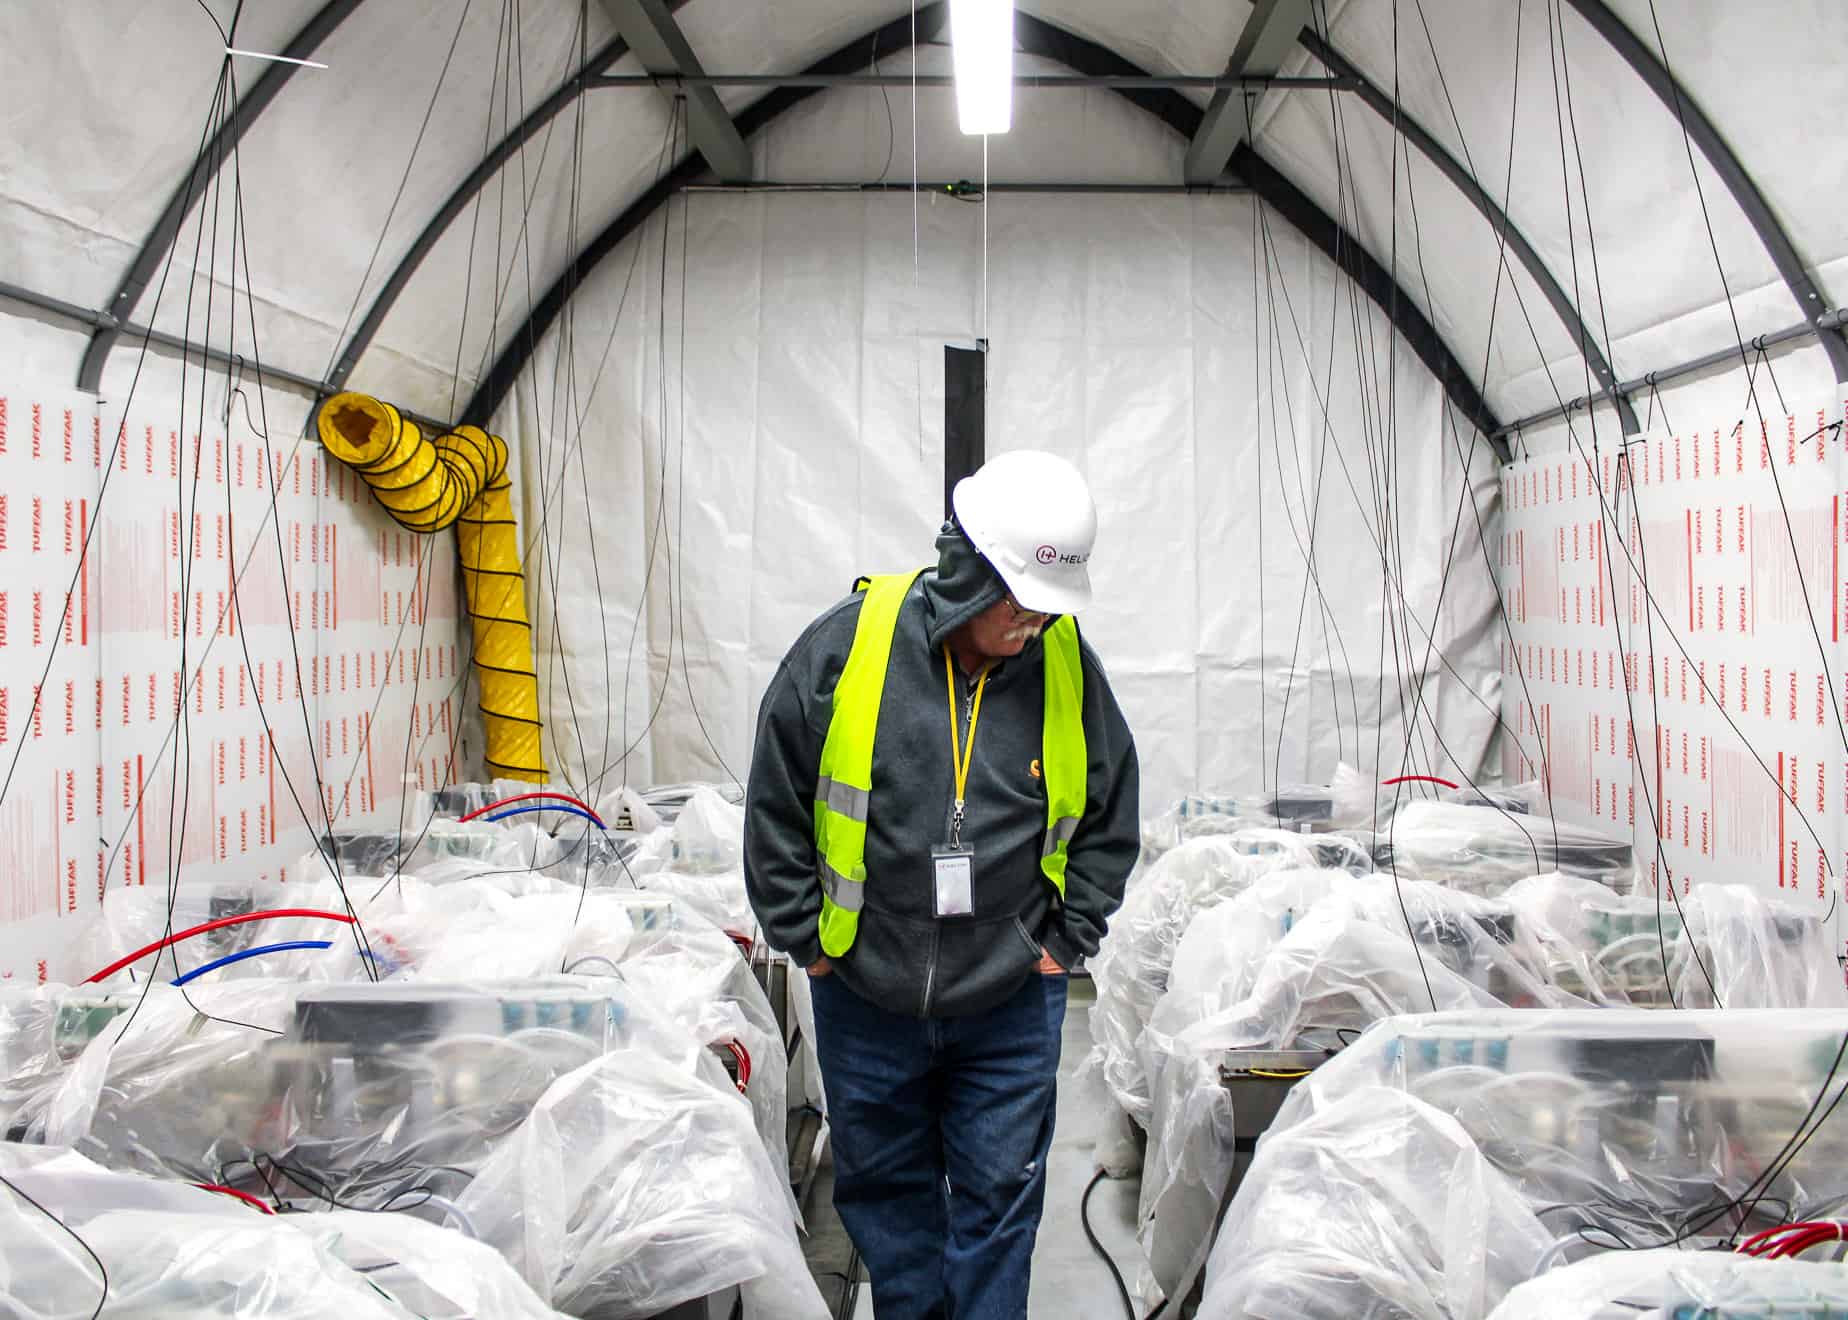 أحد العاملين في هيليون يرتدي خوذة ويسير في ممر محاط بآلات مغطاة بشرائح من البلاستيك